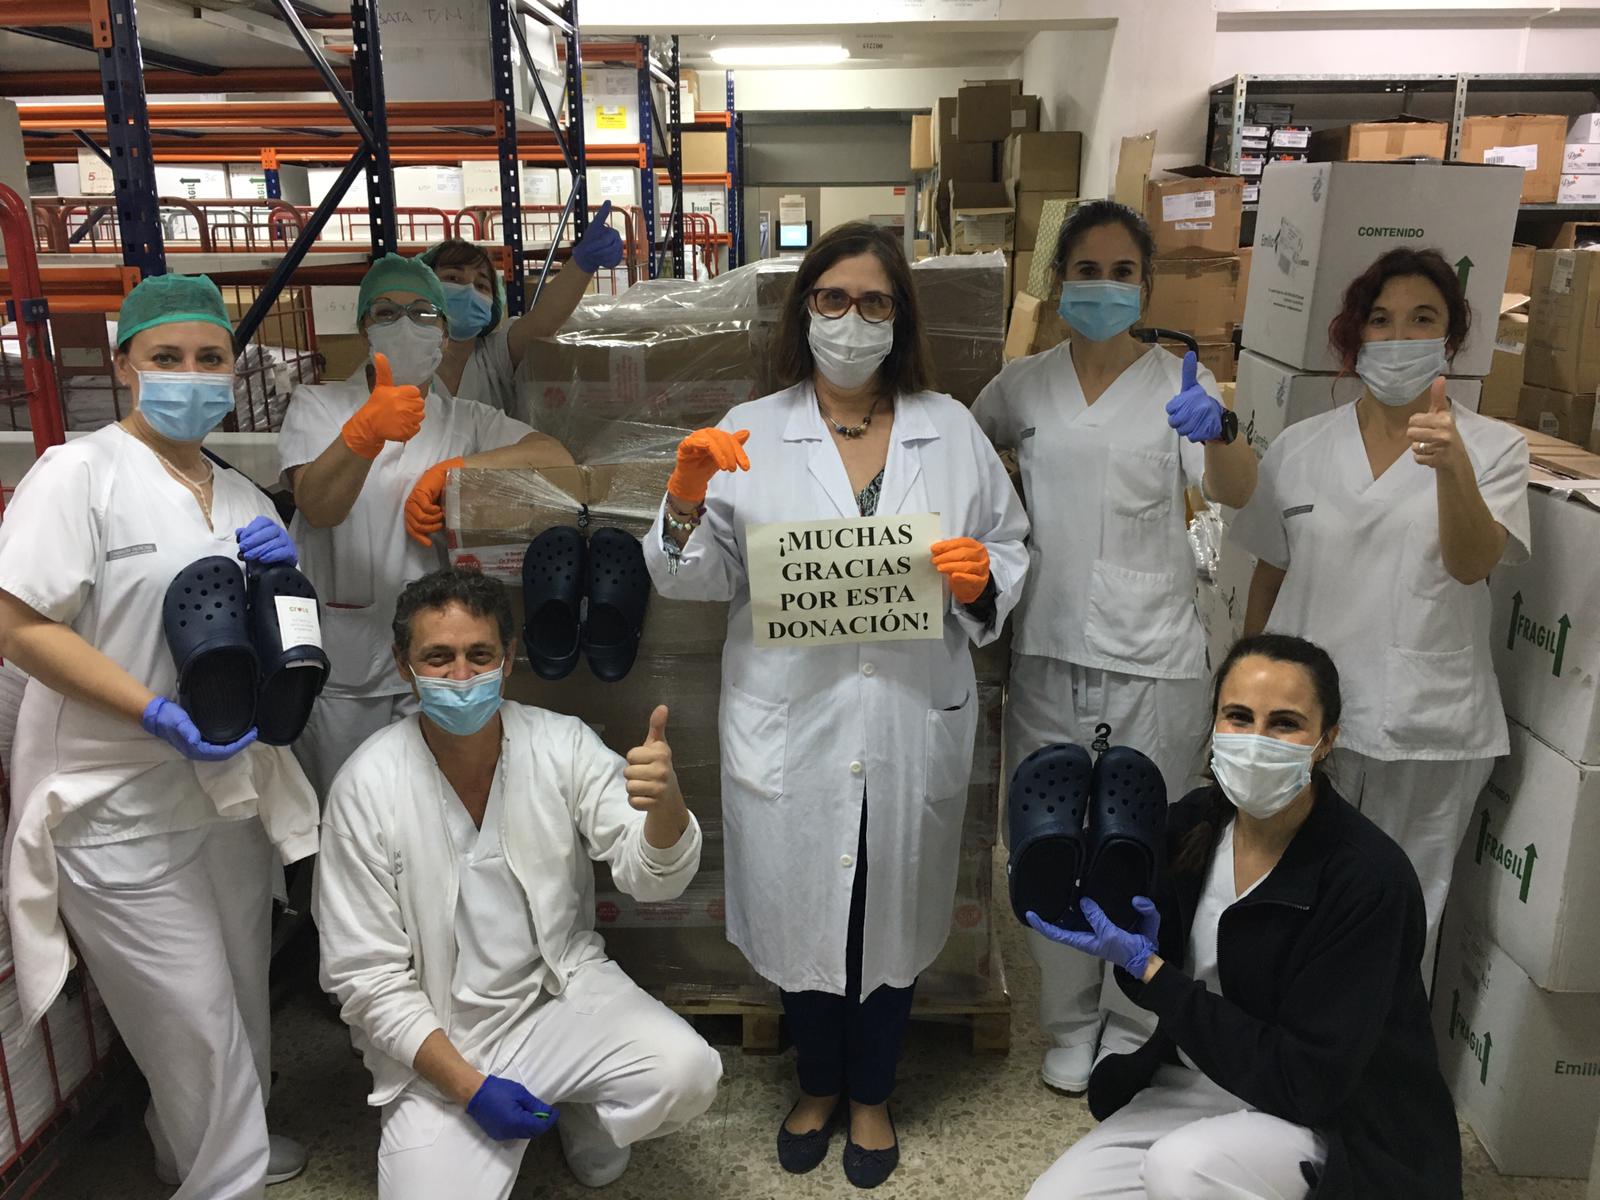 Crocs dona zapatos al personal sanitario español como parte de su iniciativa solidaria global